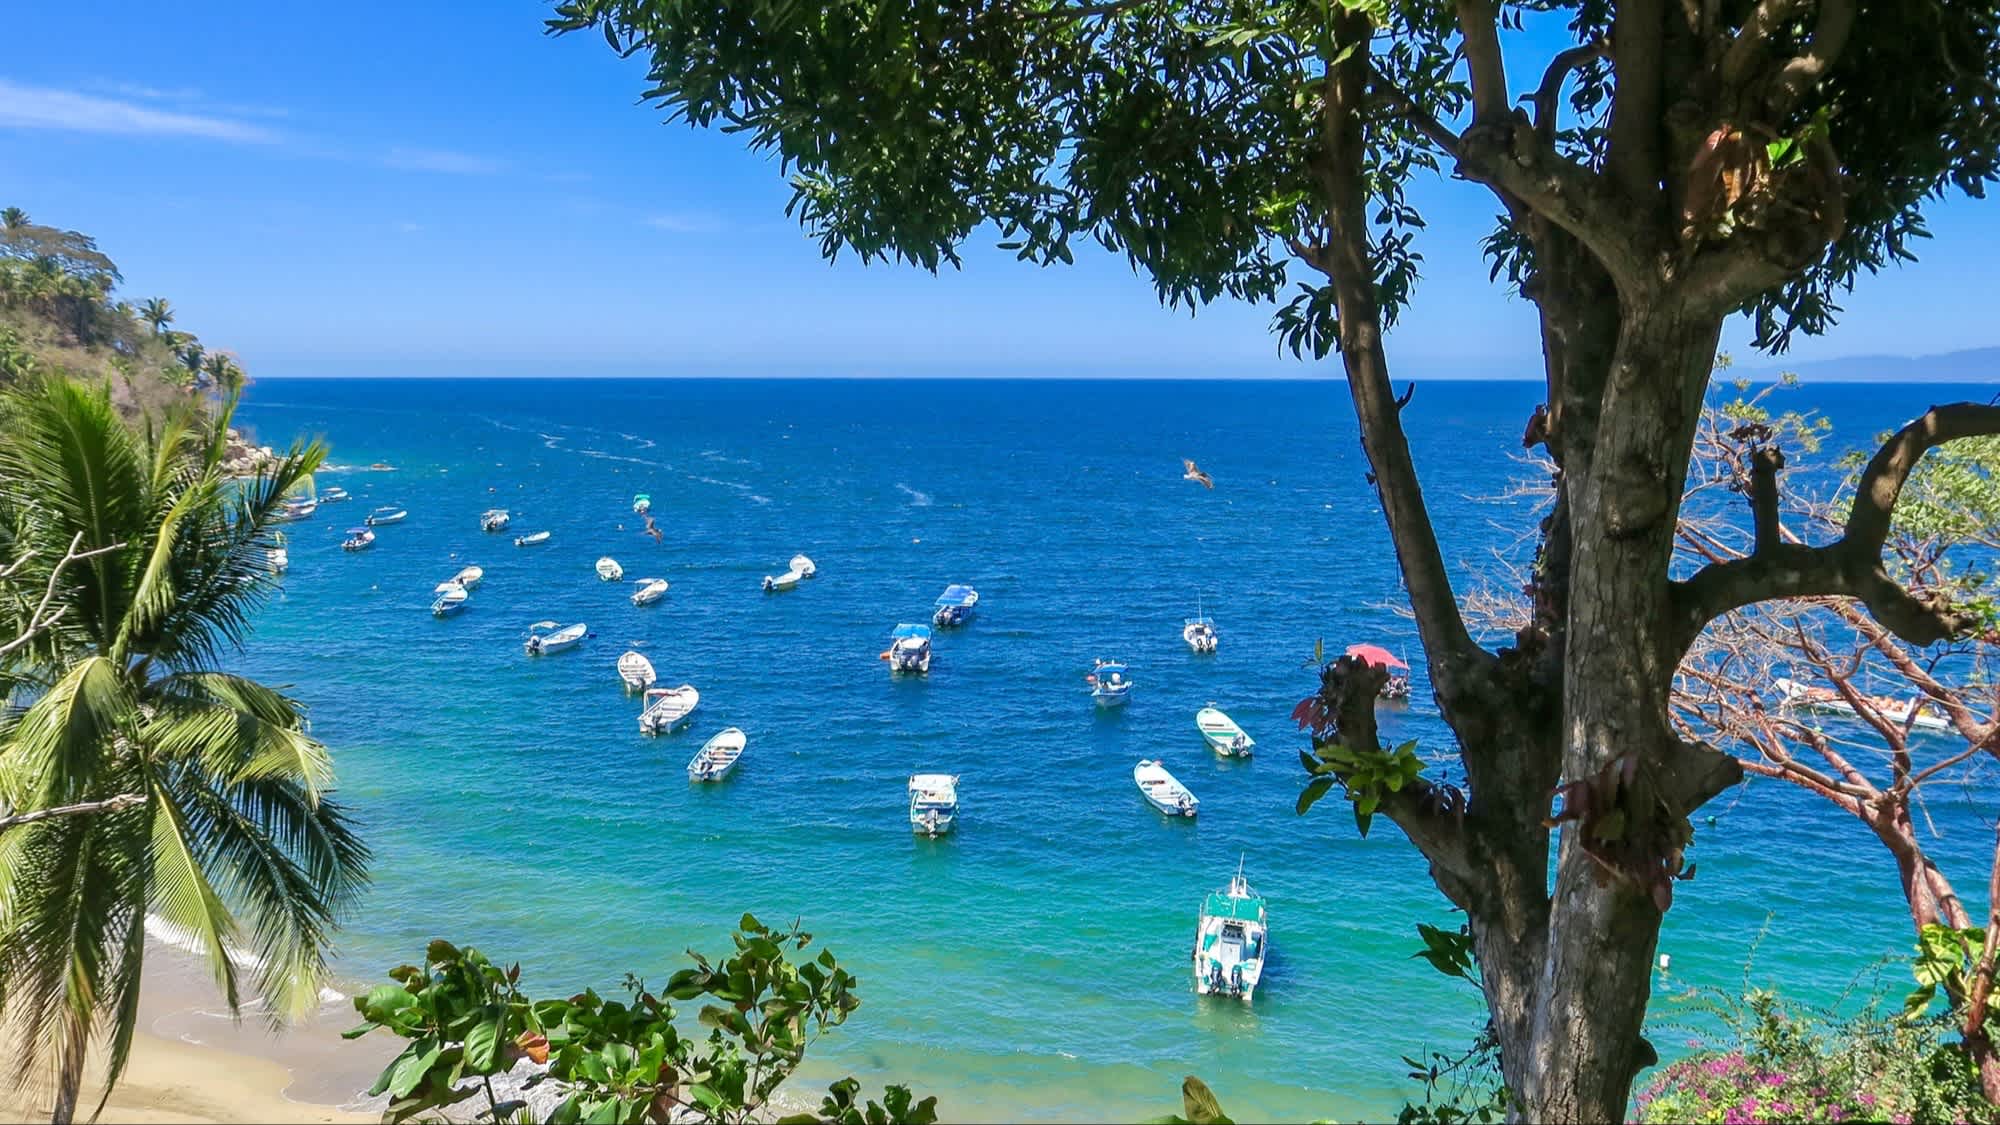 Yelapa, ein kleiner Strand an der Pazifikküste von Mexiko mit Blick auf das Meer, natürliche Vegetation sowie Boote in der Bucht.

